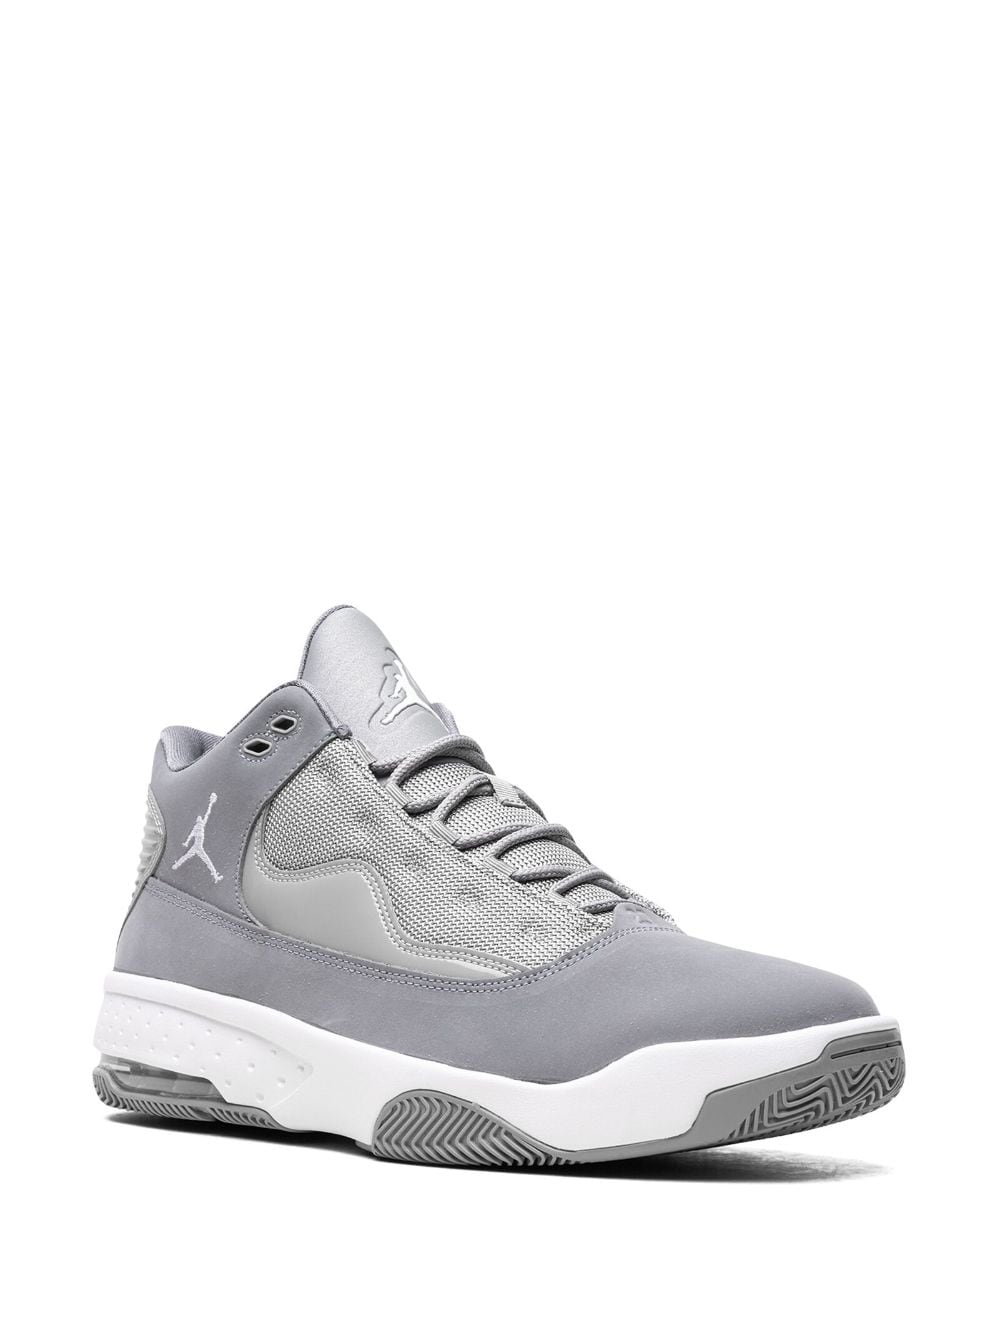 Shop Jordan Max Aura 2 "cool Grey" Sneakers